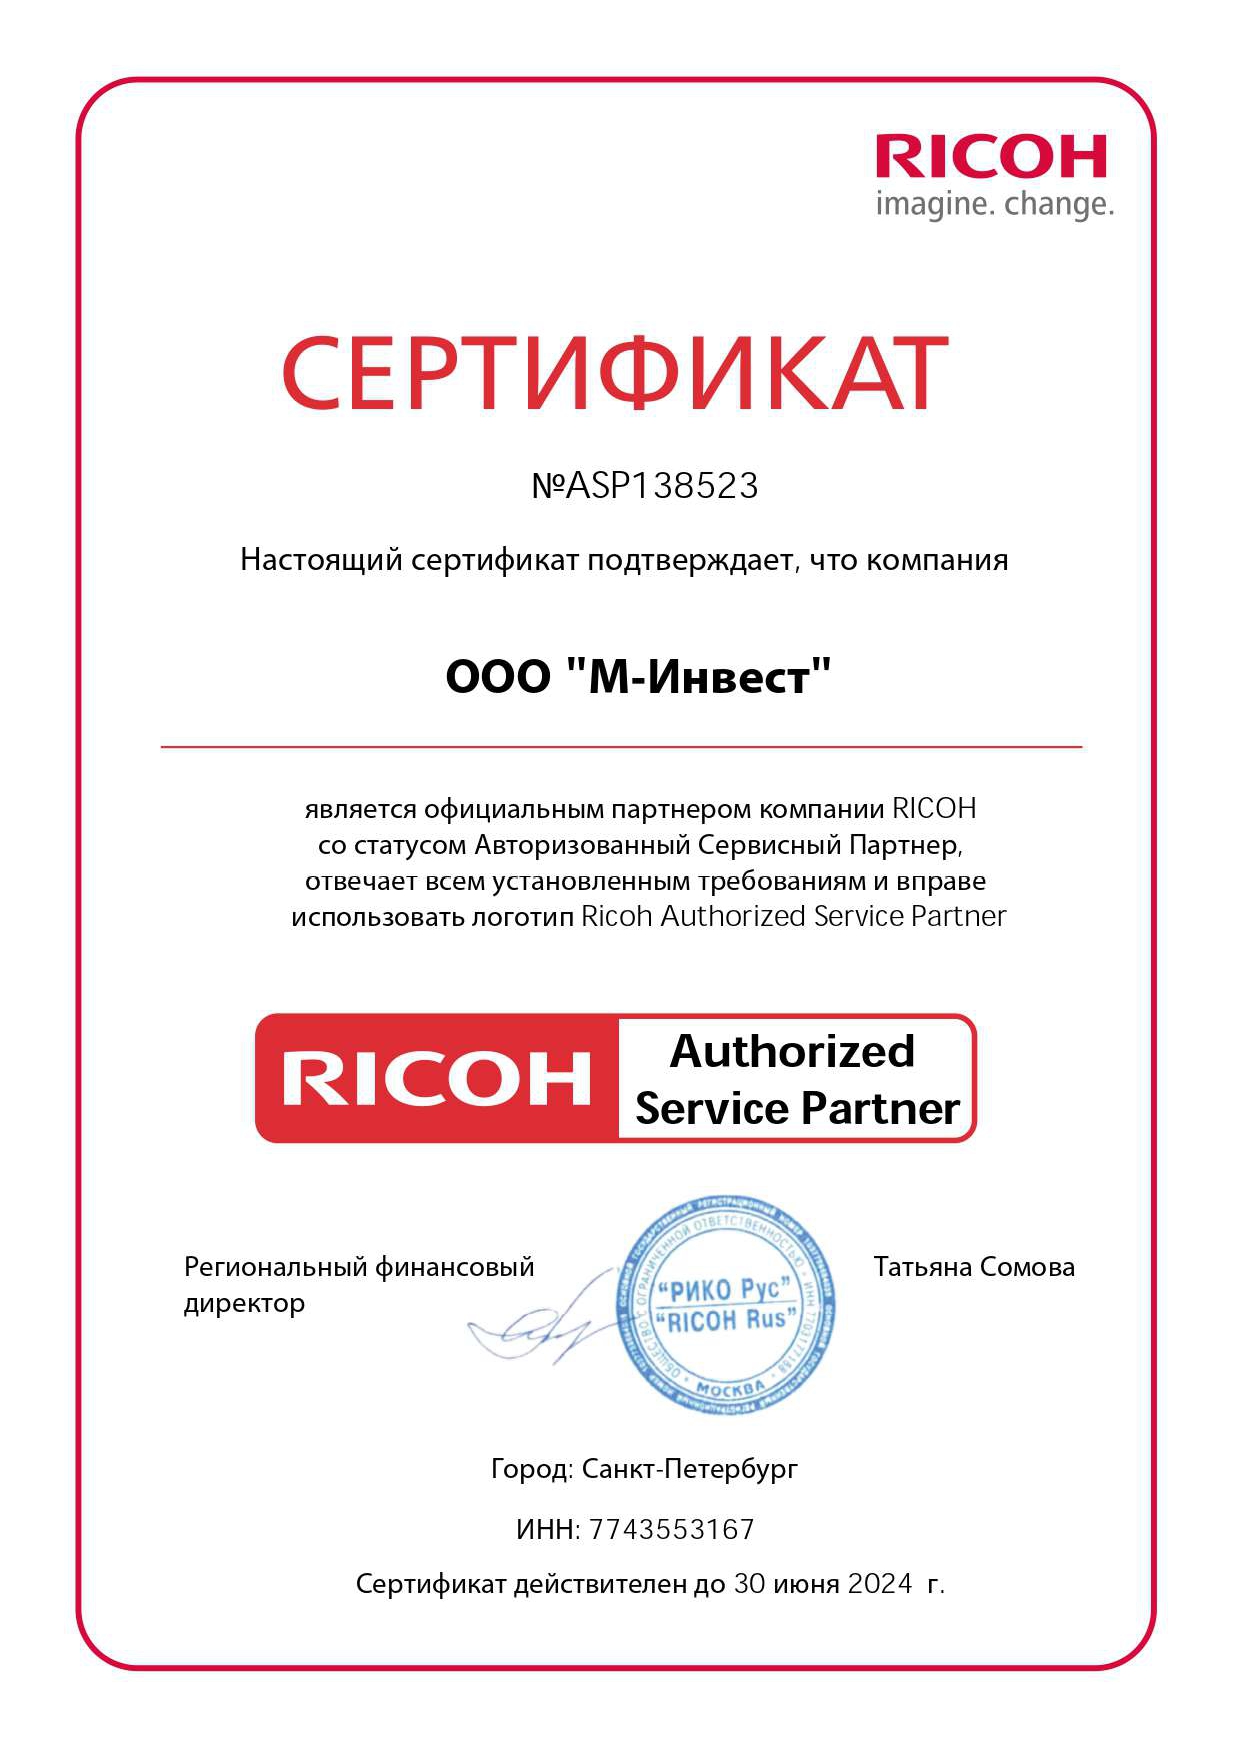 X-Com – Бизнес-Партнер компании RICOH в России